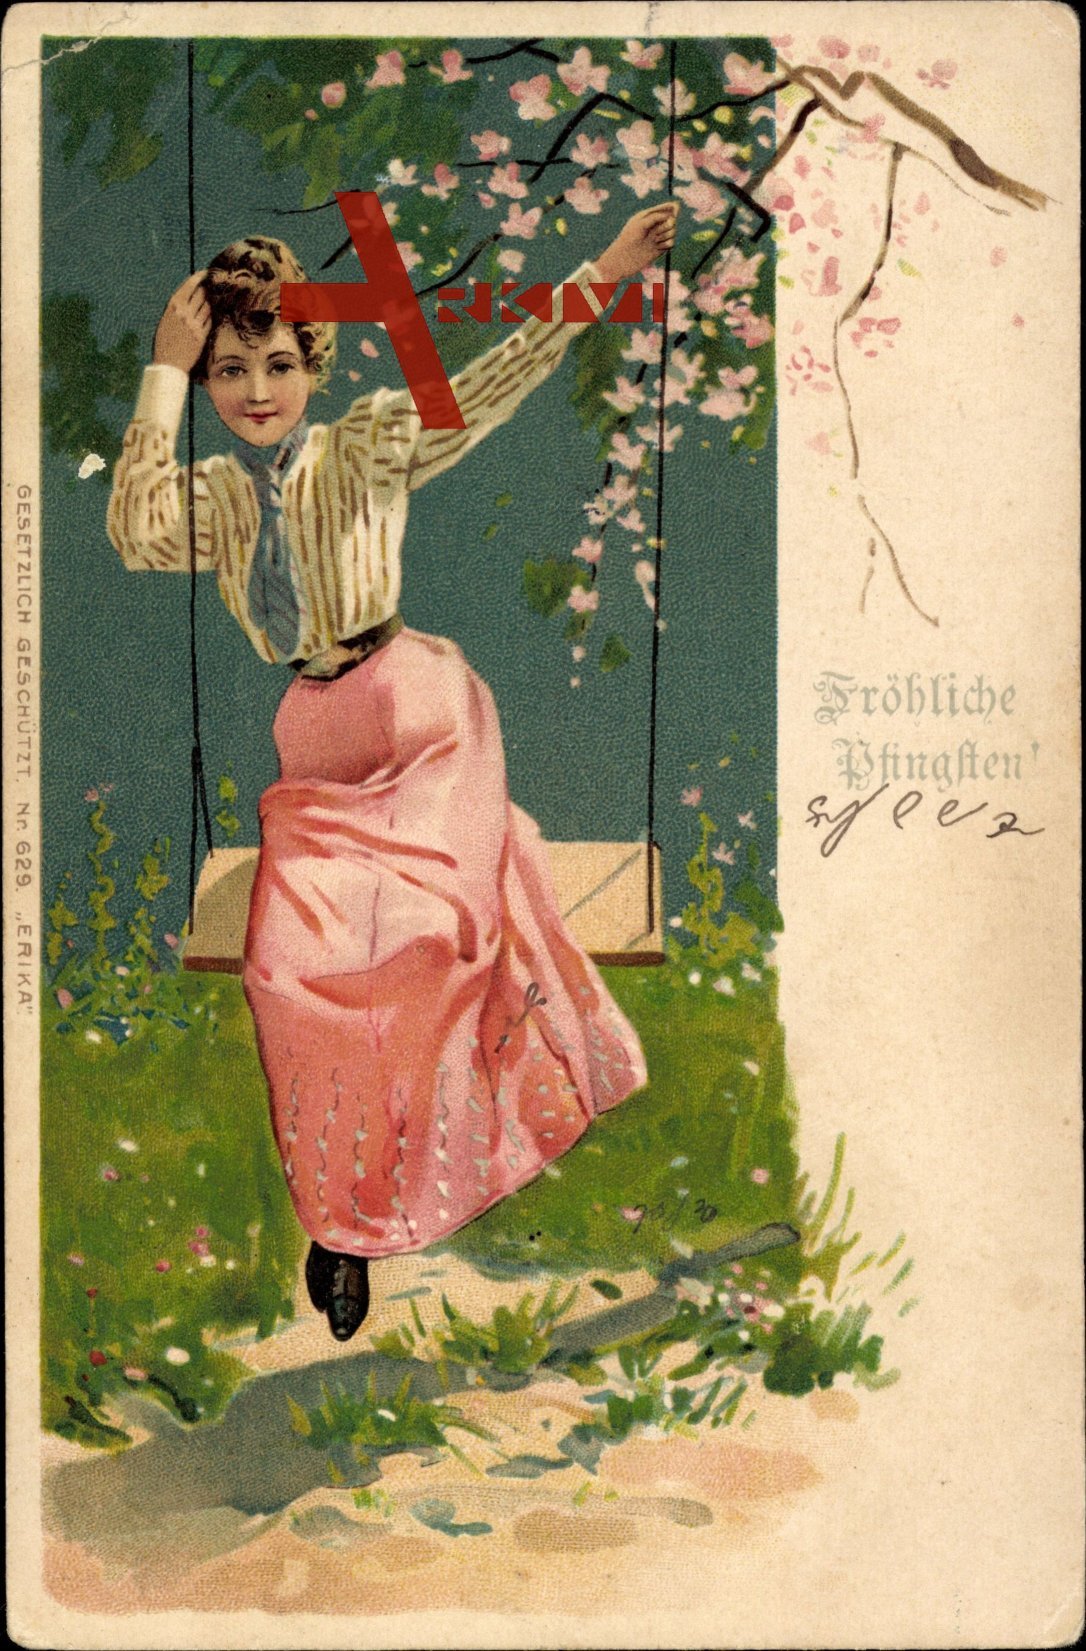 Glückwunsch Pfingsten, Frau auf einer Schaukel, Baumblüte, Frühling